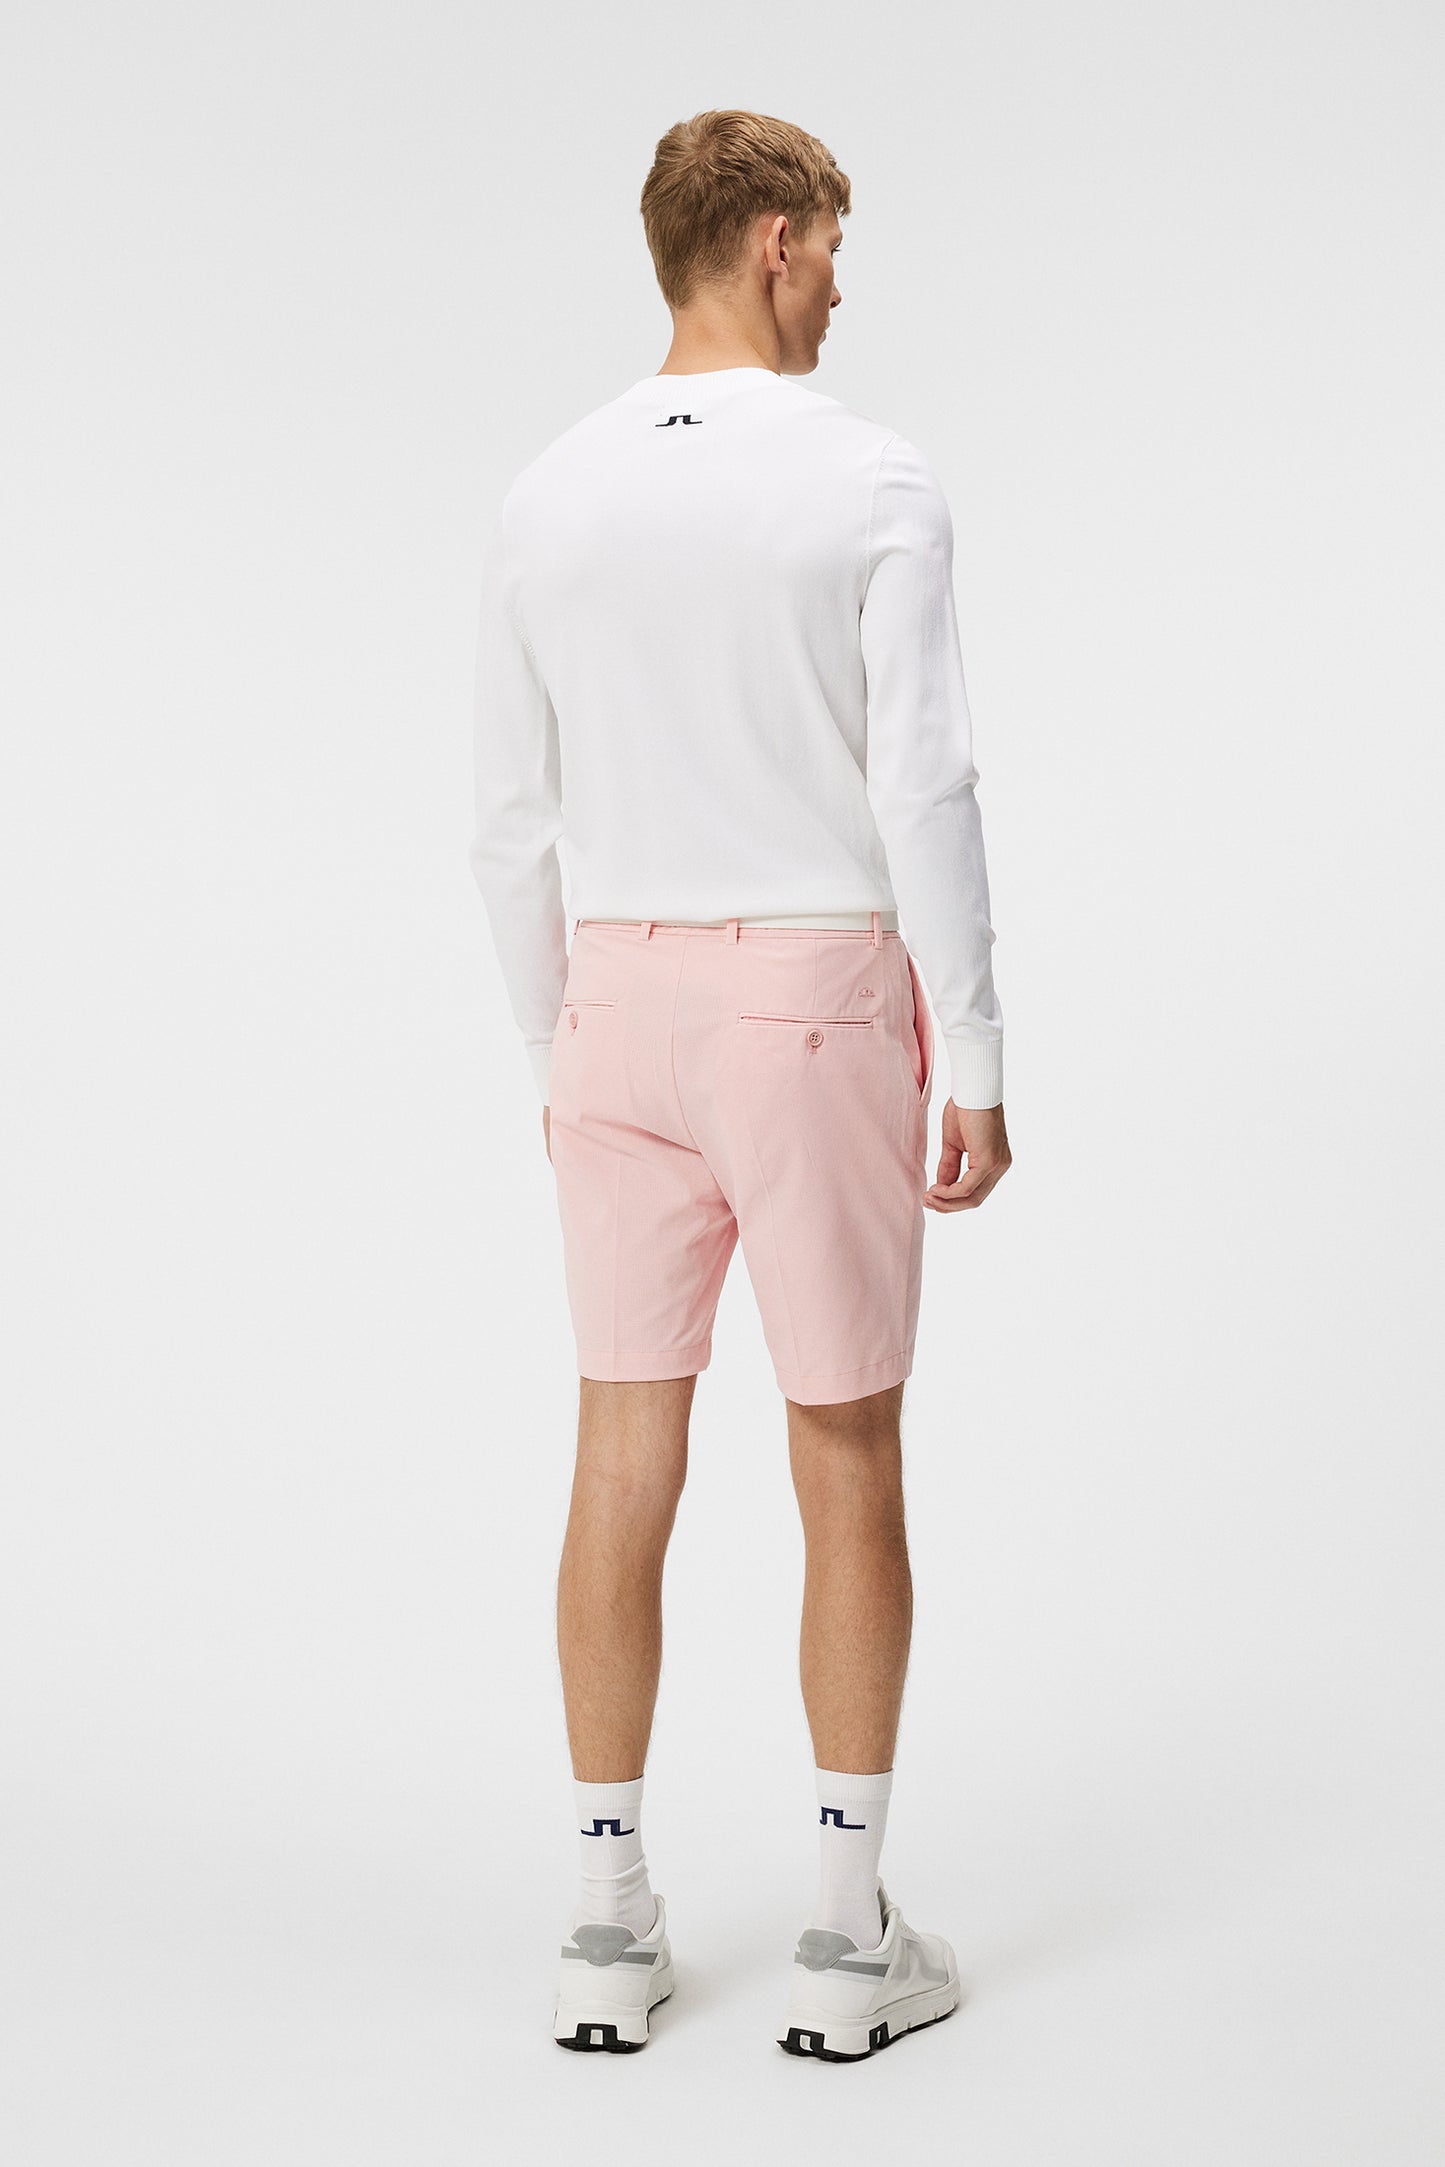 Vent Tight Shorts / Powder Pink